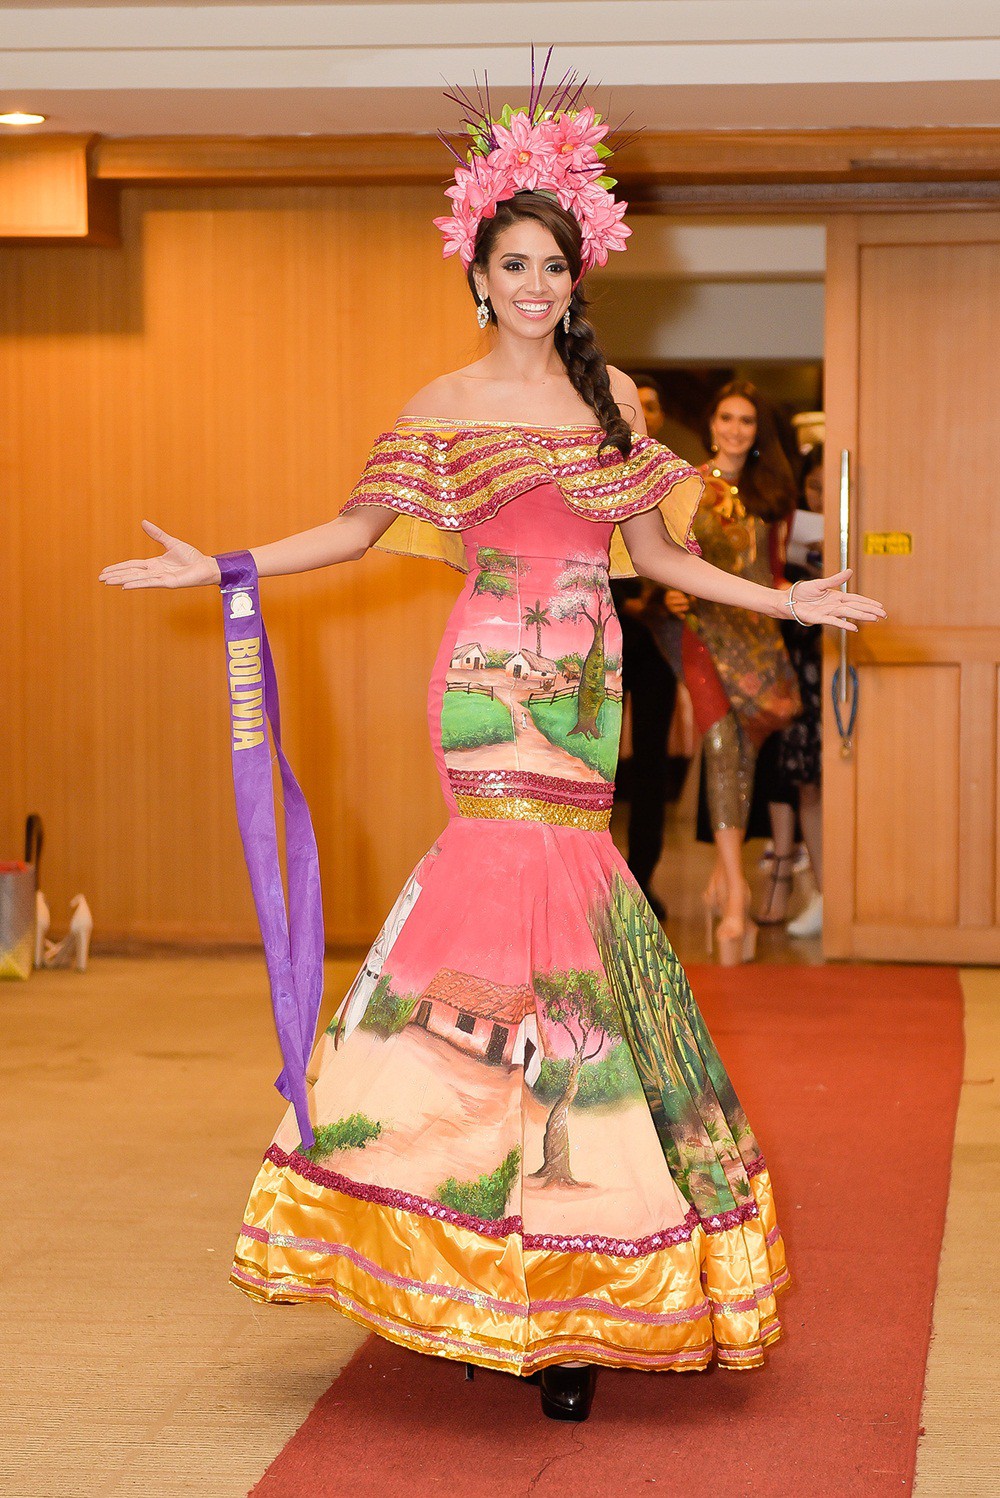 Phan Thi Mơ lọt top 10 phần thi trang phục của Hoa hậu Đại sứ Du lịch Thế giới 2018 - Ảnh 10.